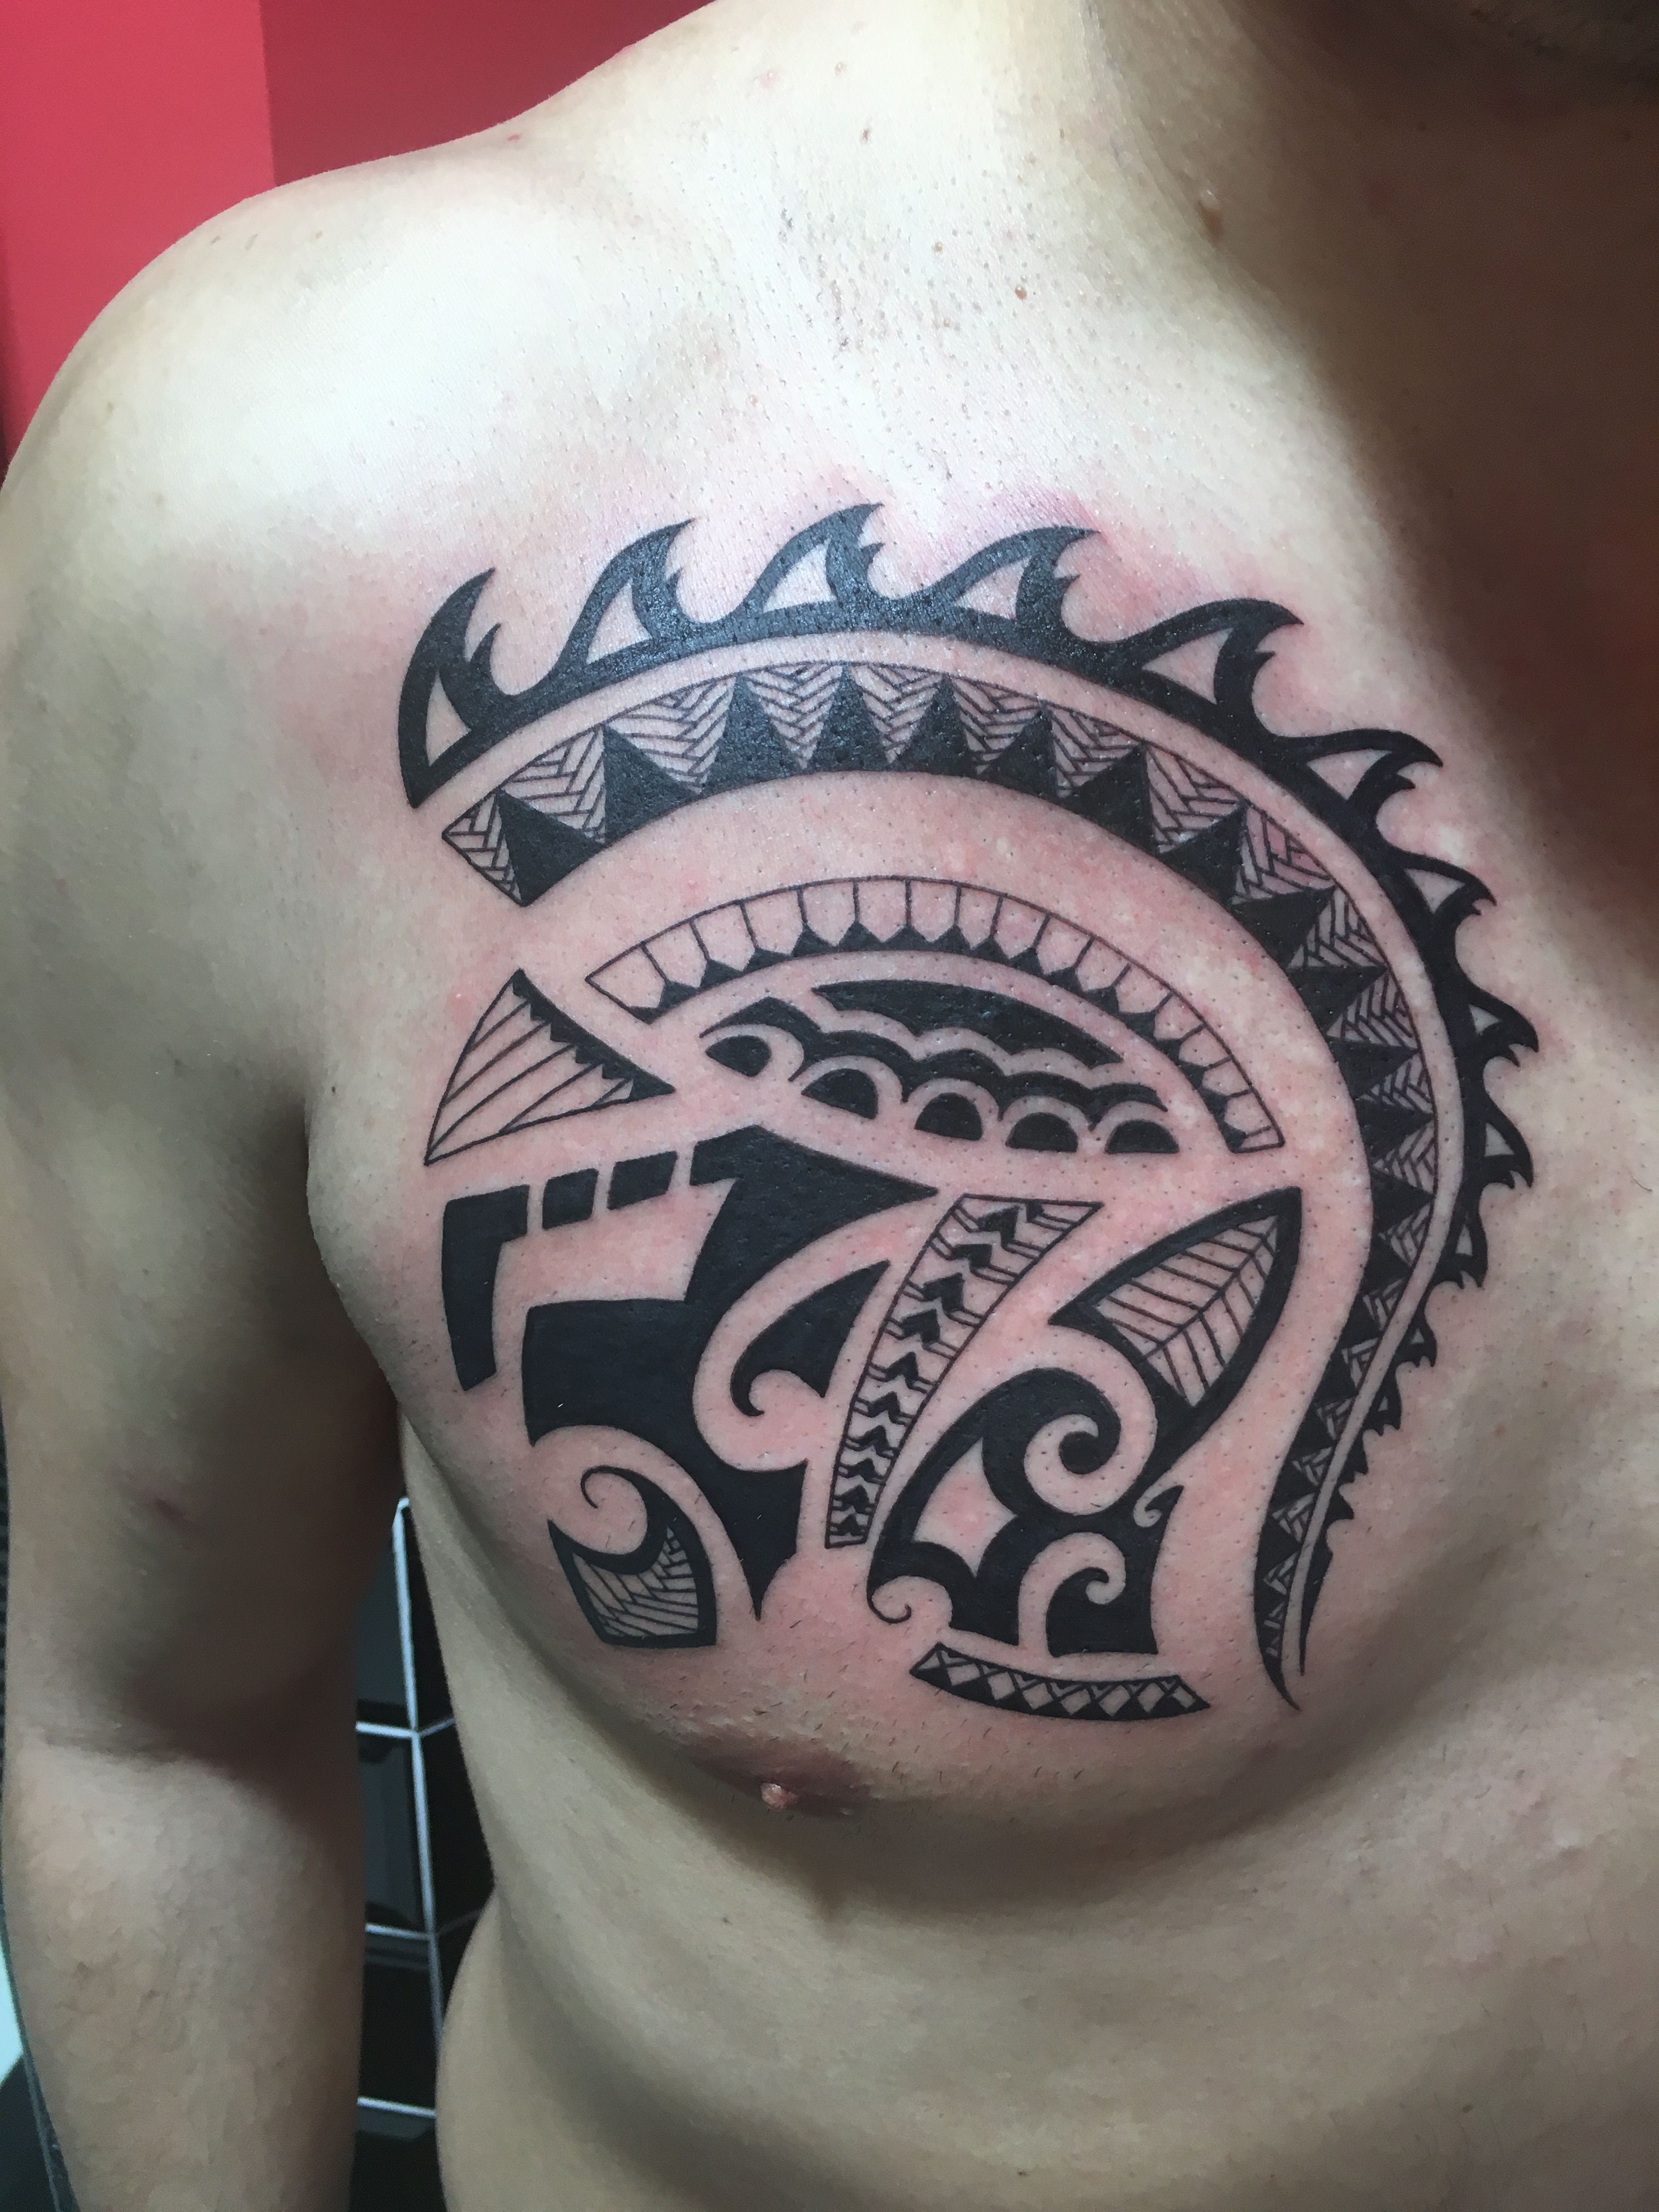 Westendtattoowien Tattoo Maori Tattoo Chest Tattoo Brust pertaining to measurements 3024 X 4032